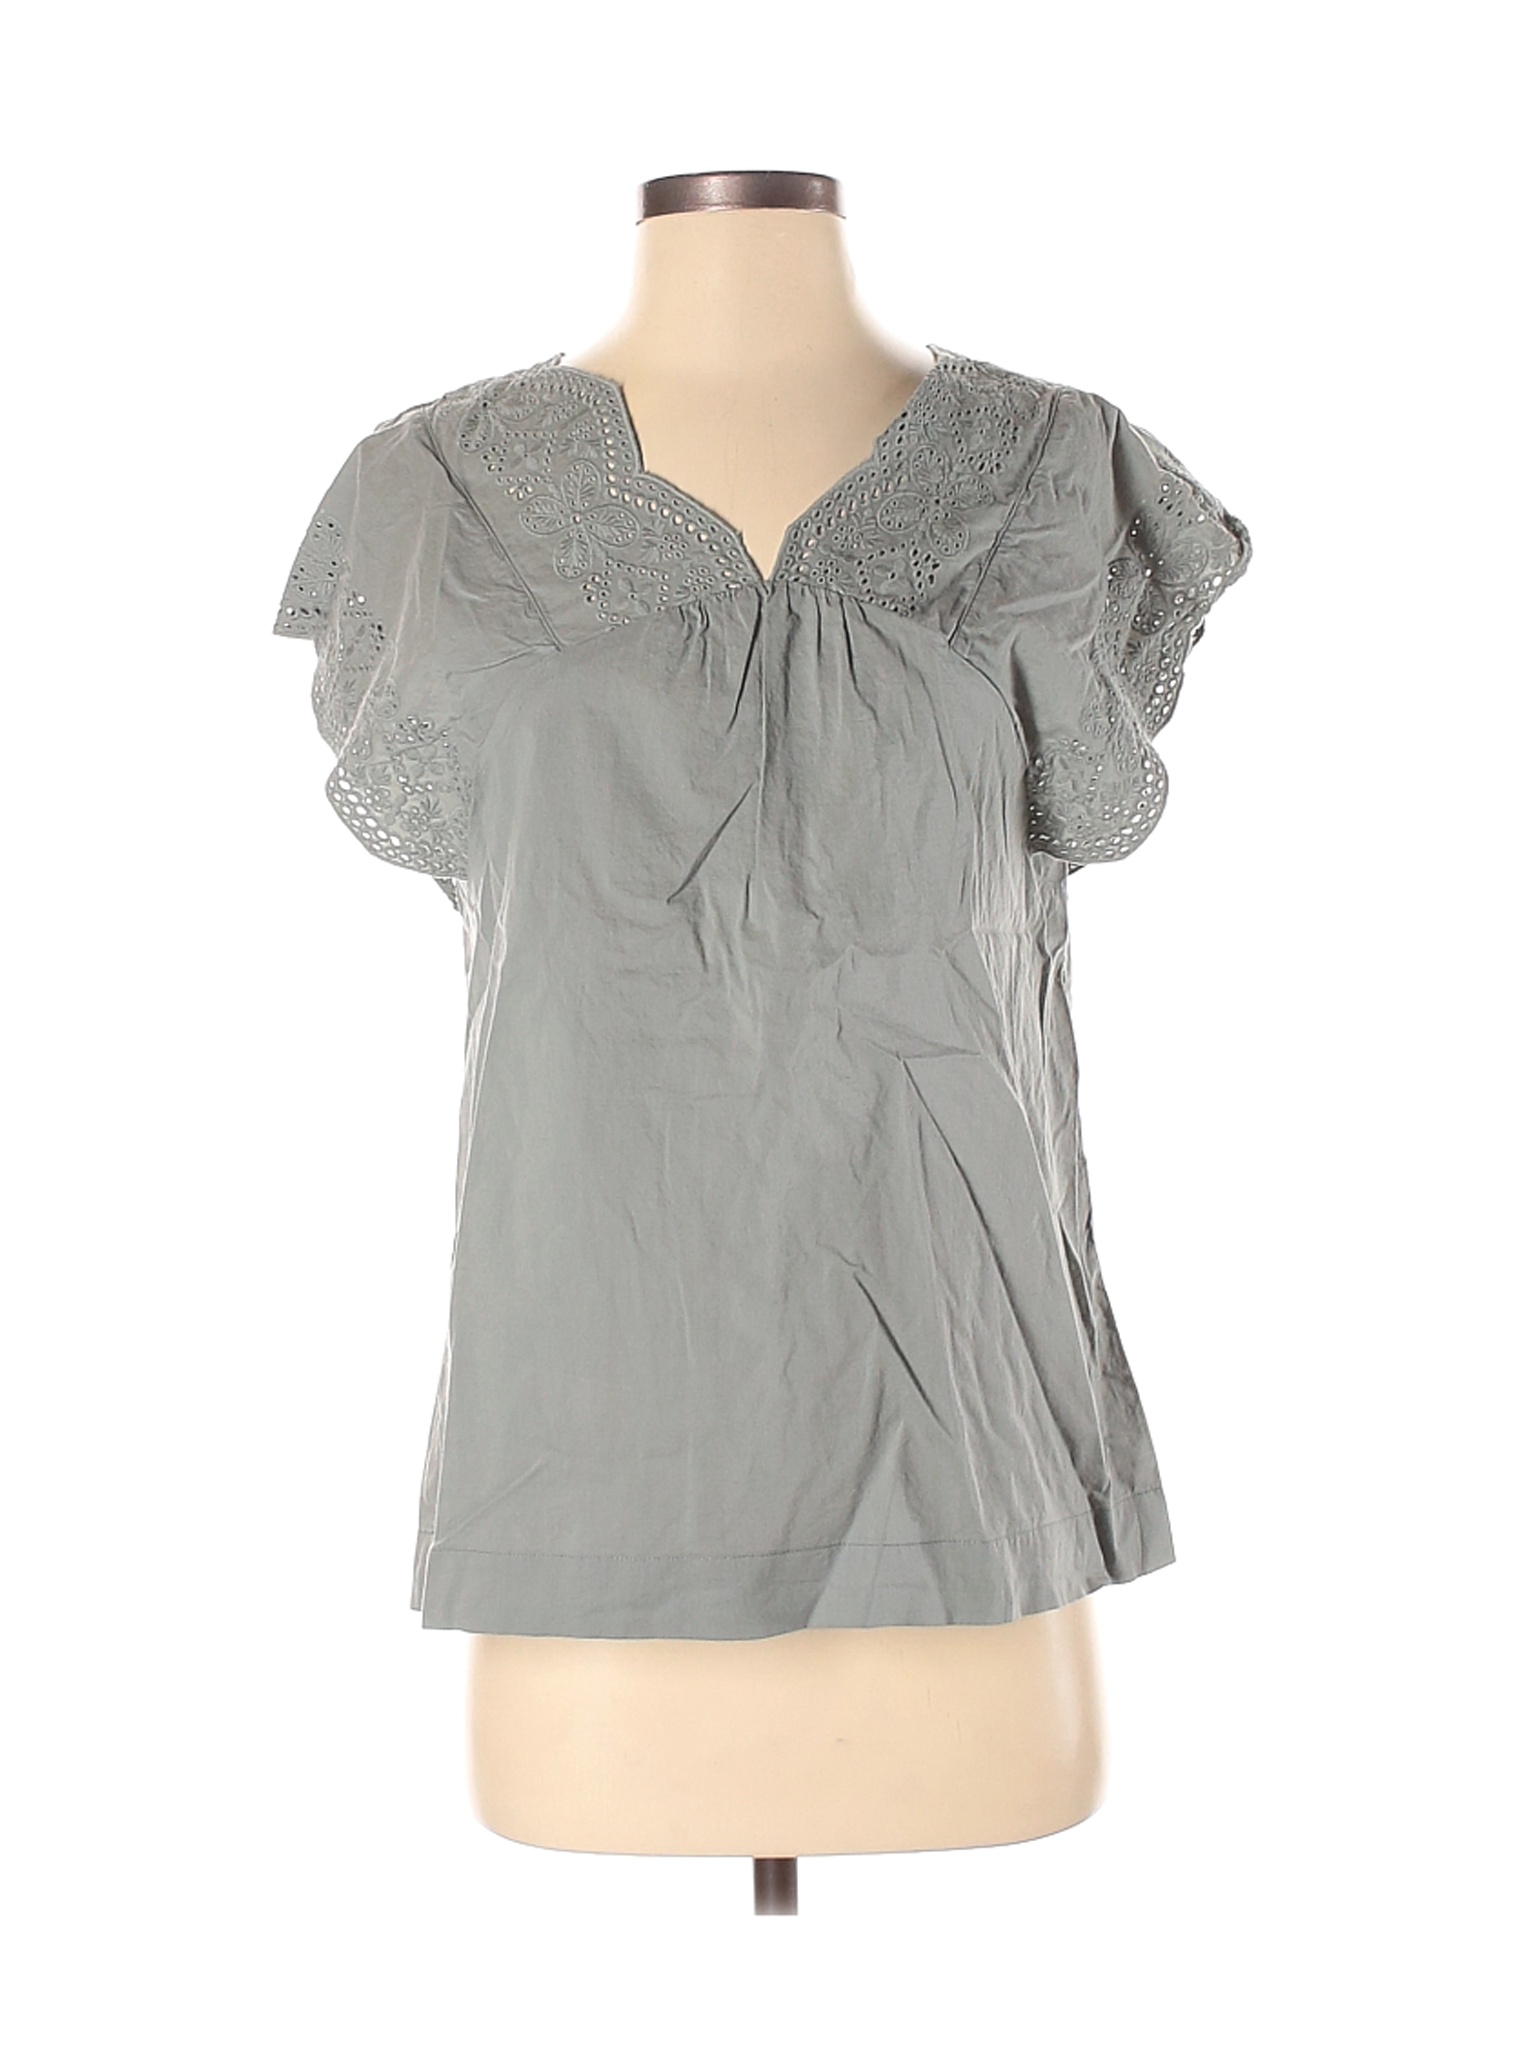 Sonoma Goods for Life Women Gray Short Sleeve Blouse S | eBay